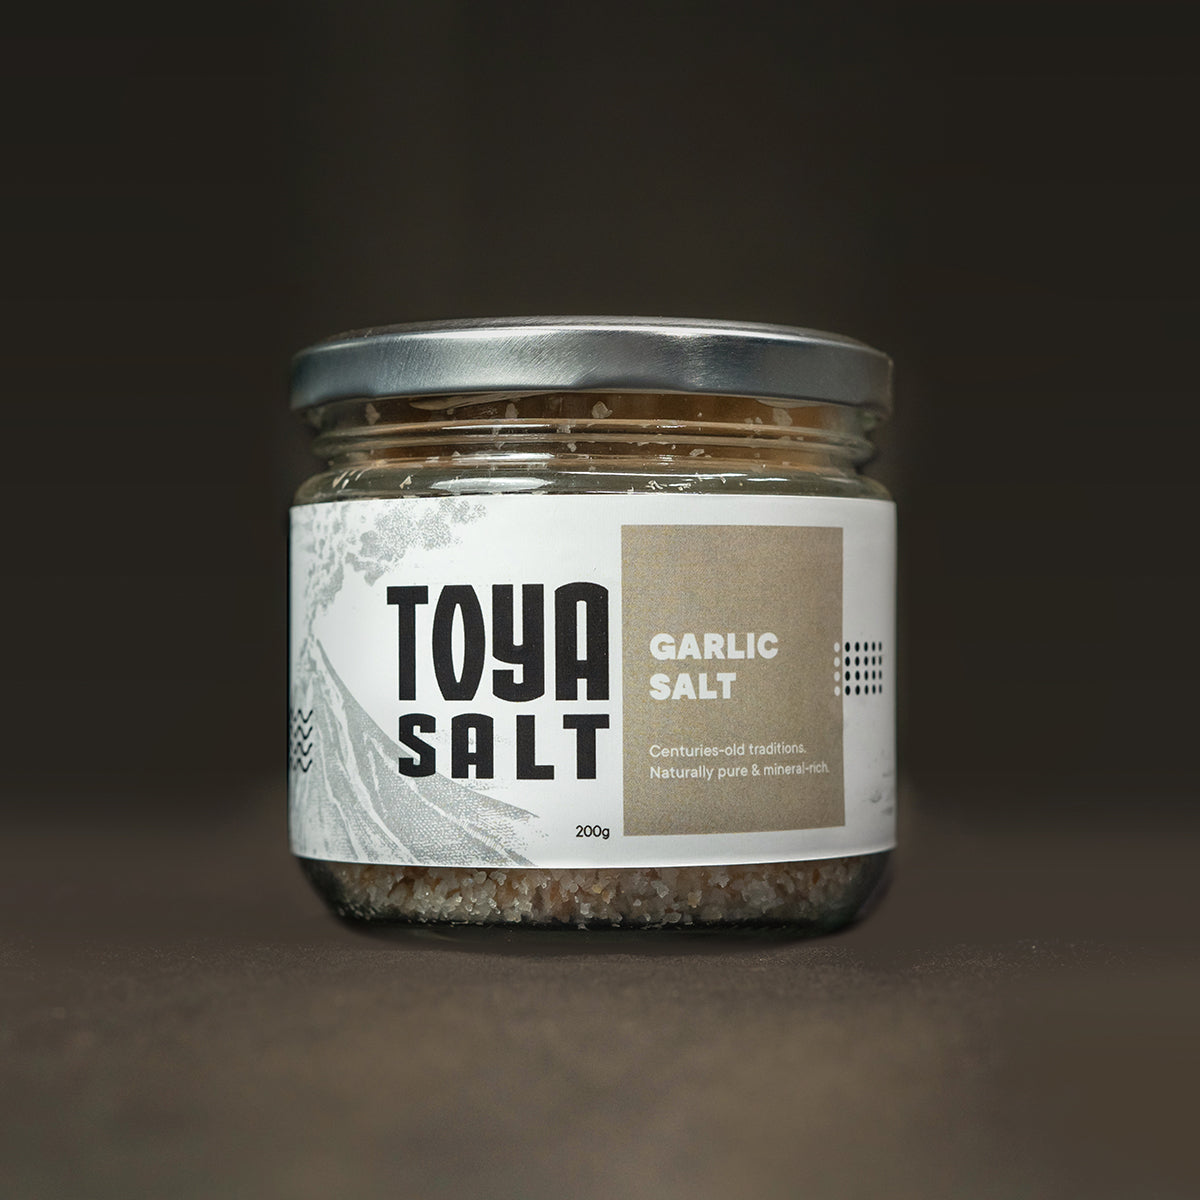 Garlic Salt - Toya Salt